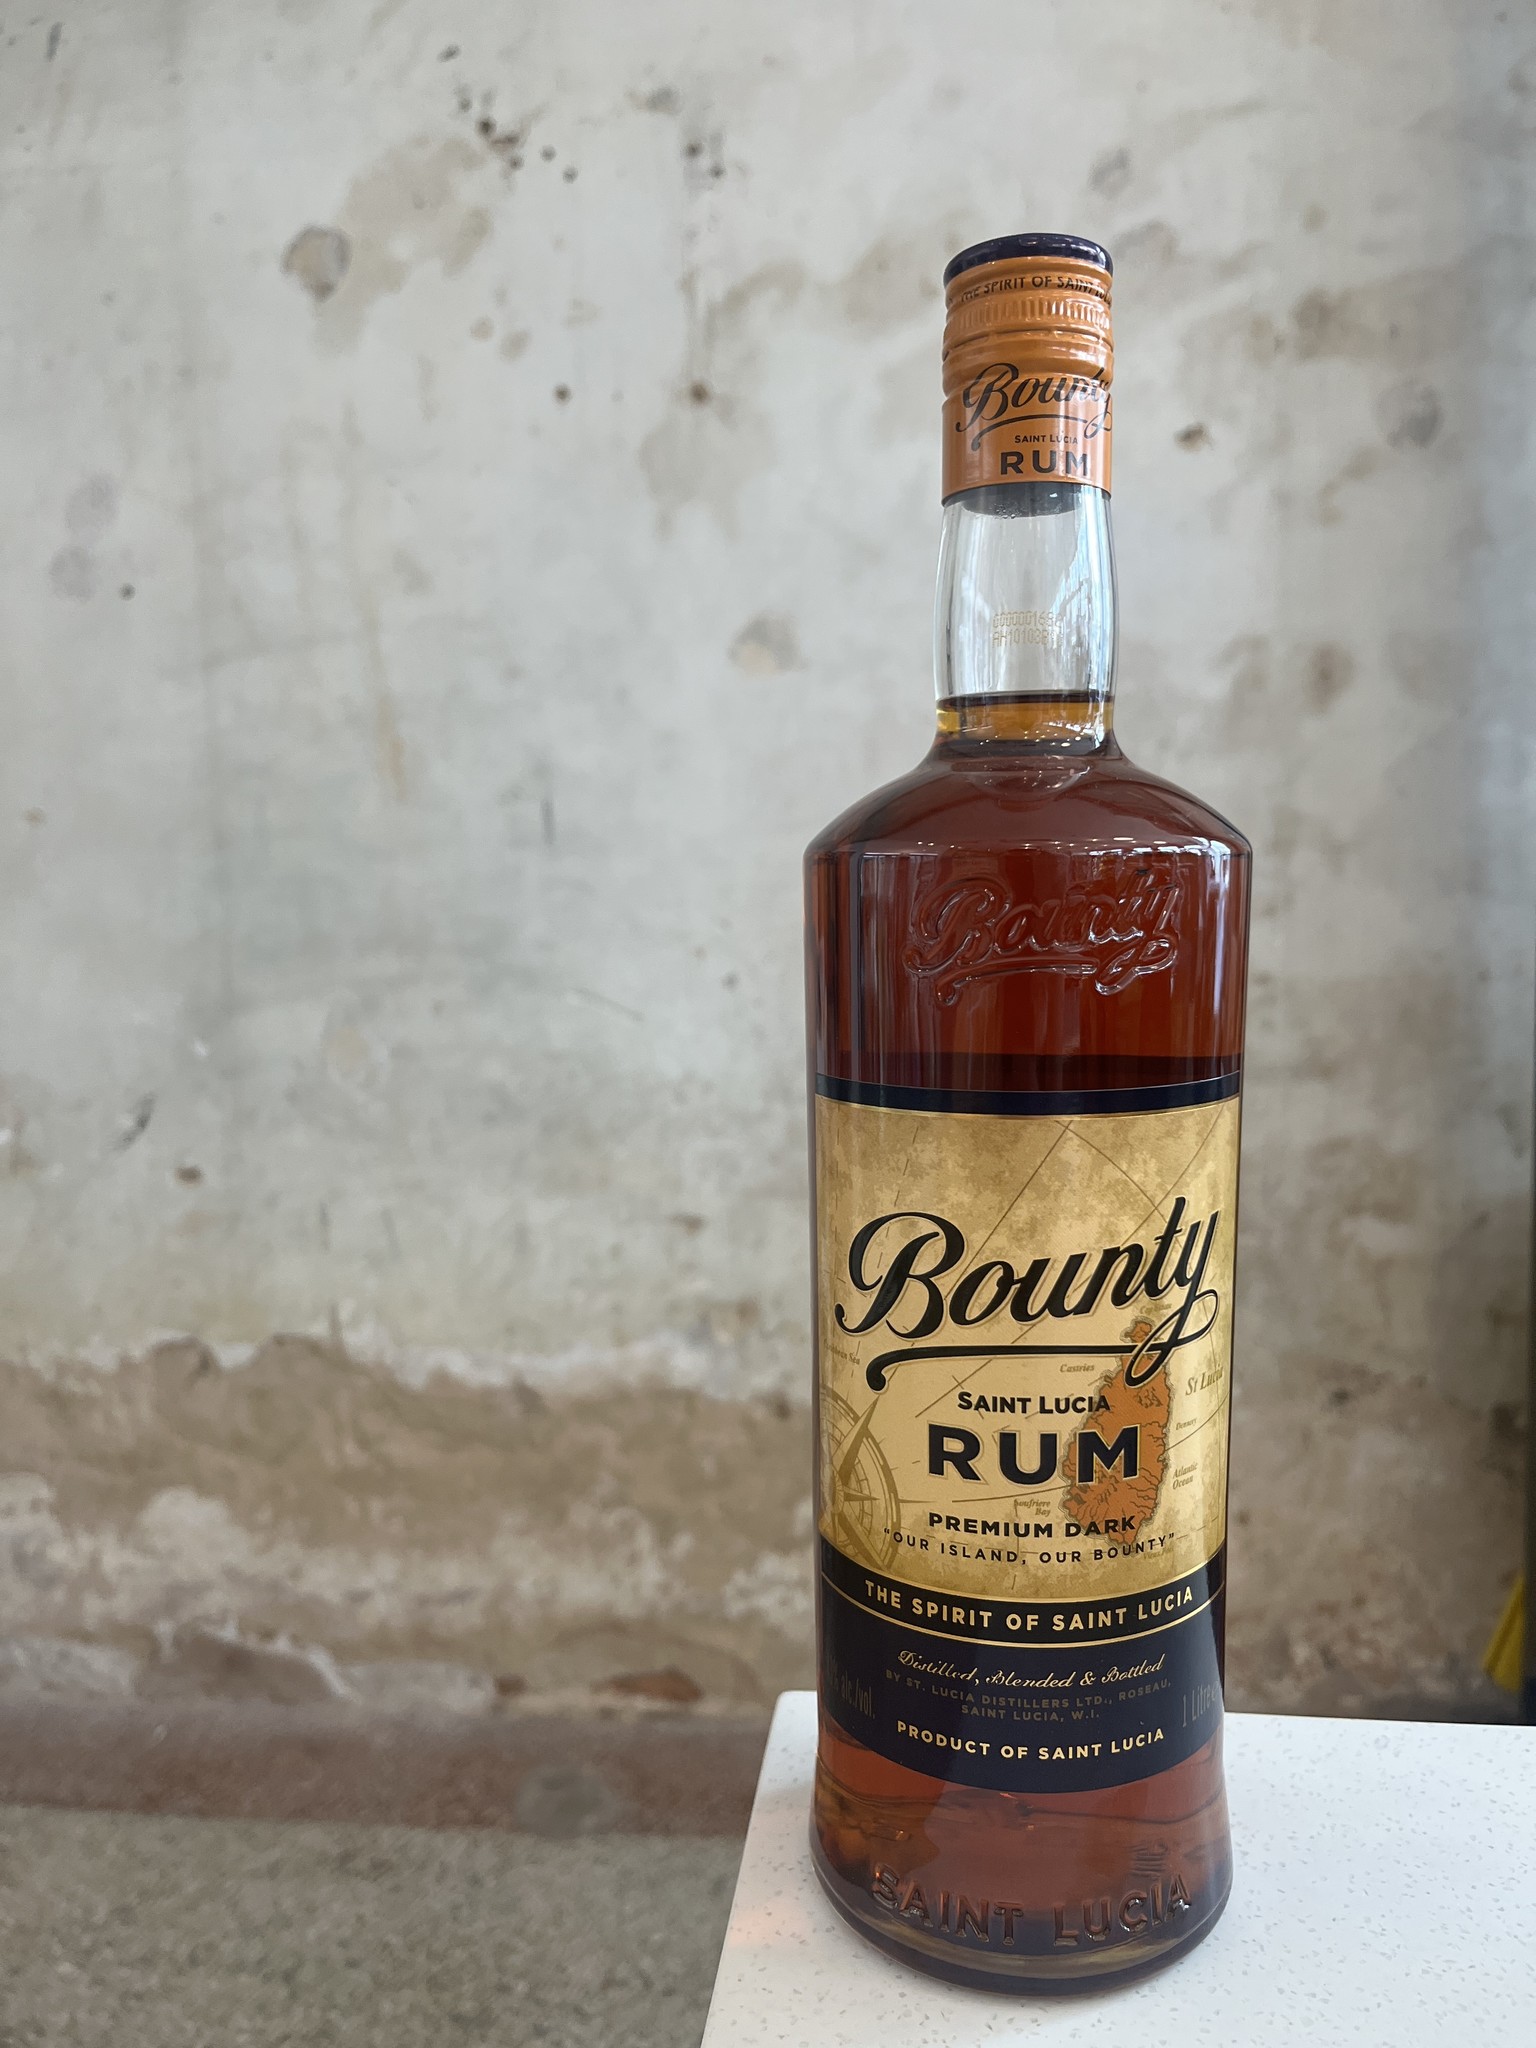 Bounty Dark Rum